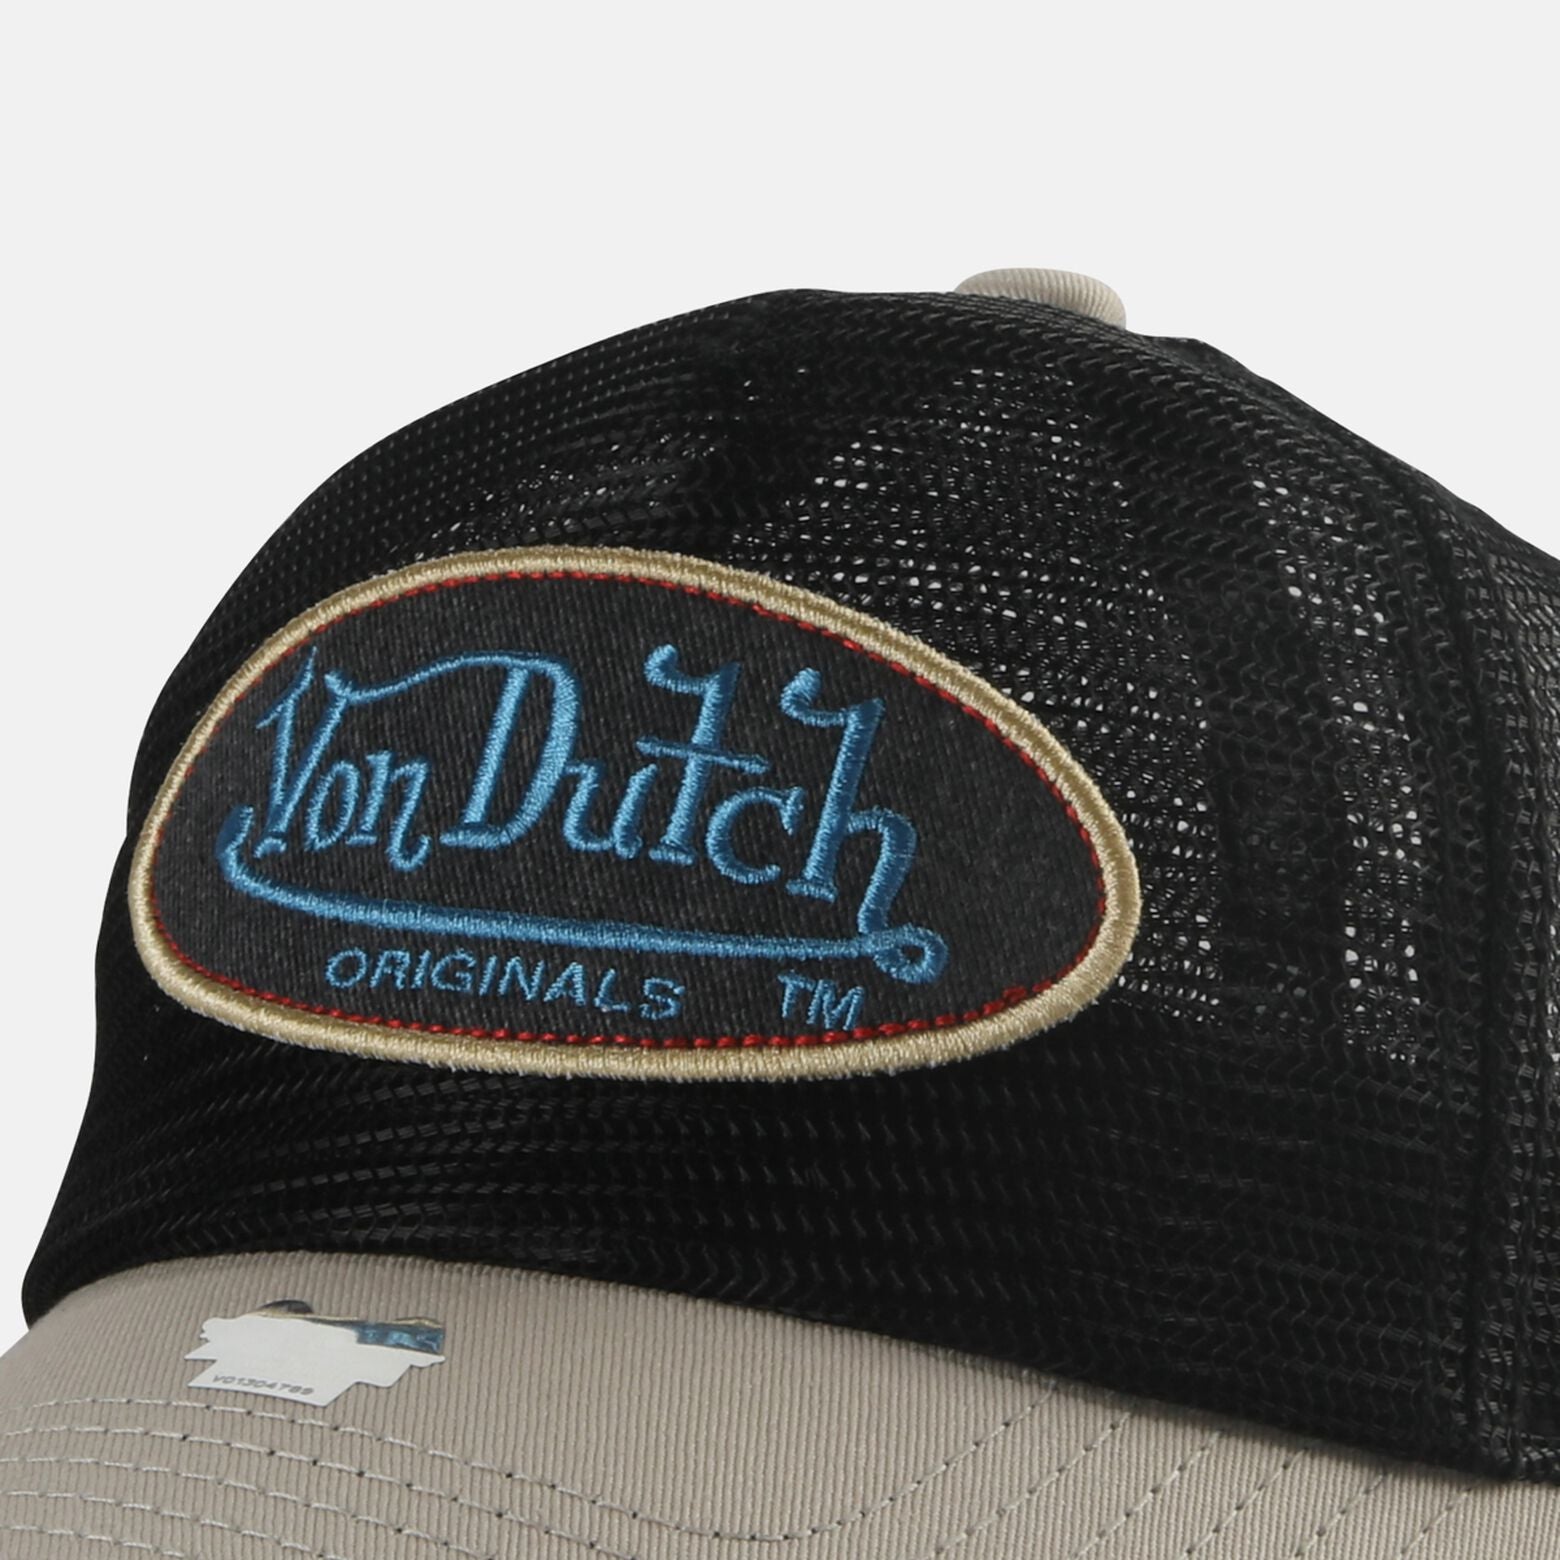 Von Dutch Boston Trucker Cap - Black Mesh - Headz Up 